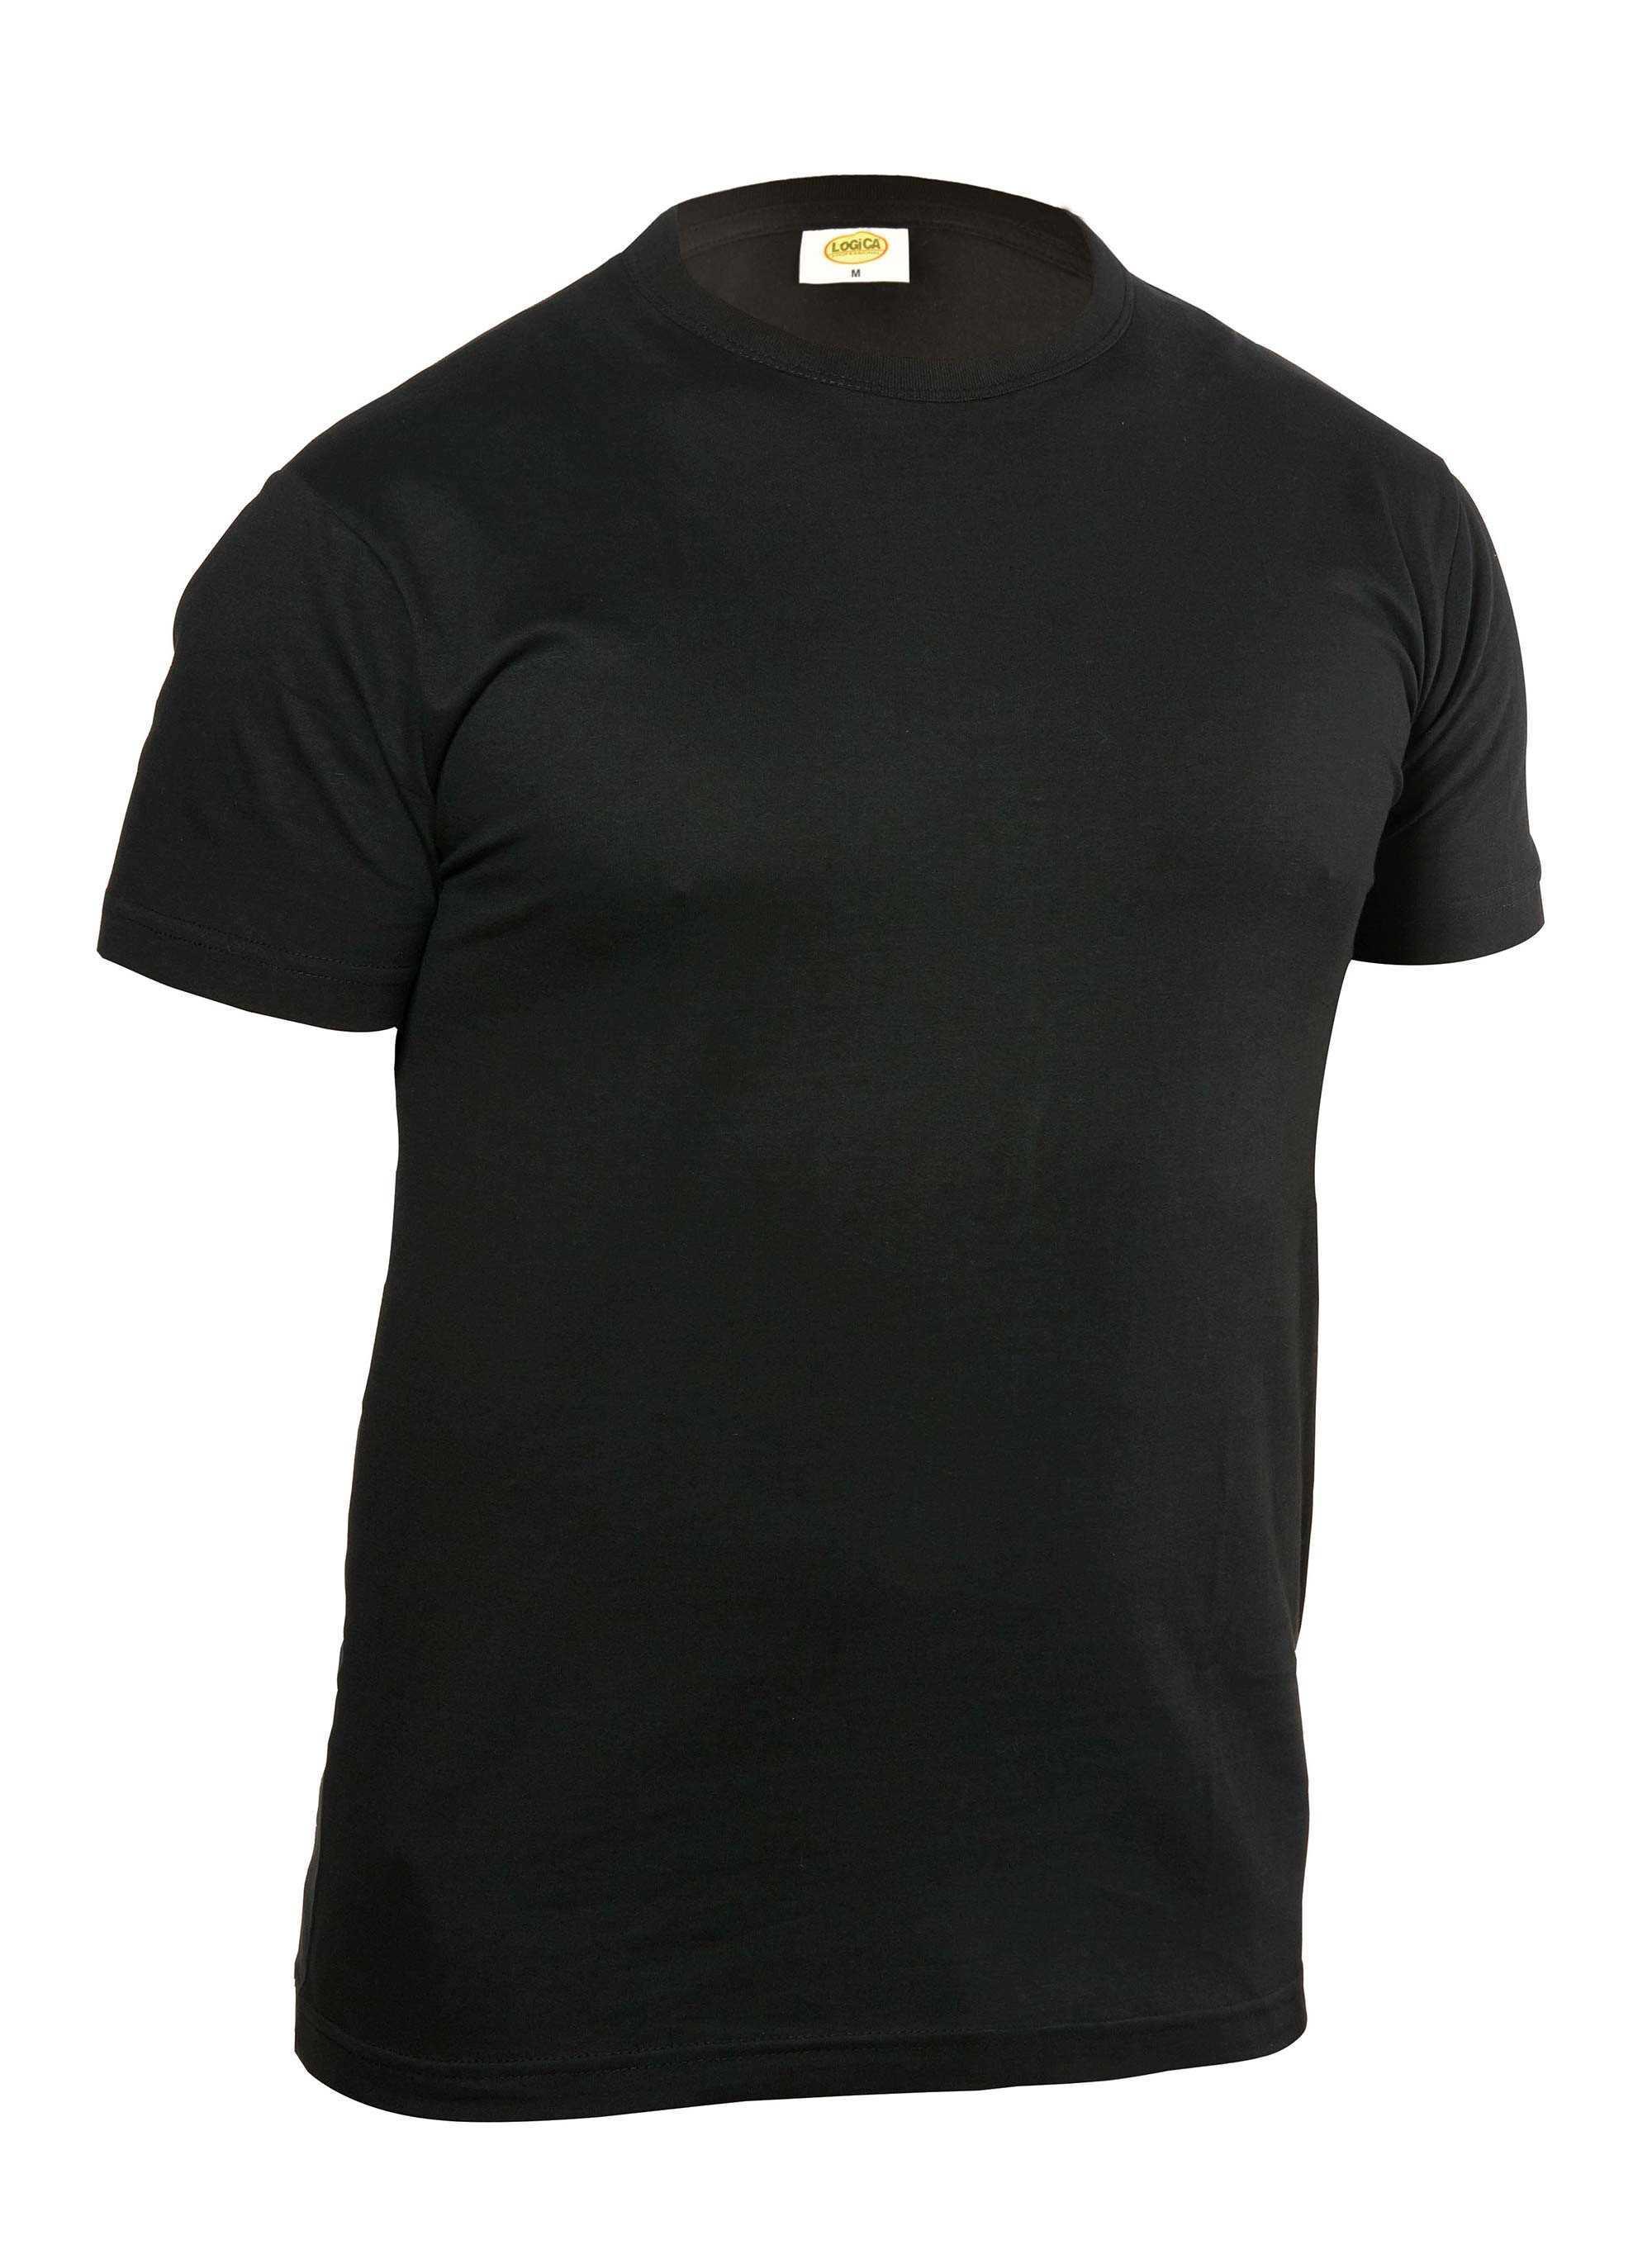 T-shirt manica corta cotone 135grammi nera taglia M Logica 897ET-M